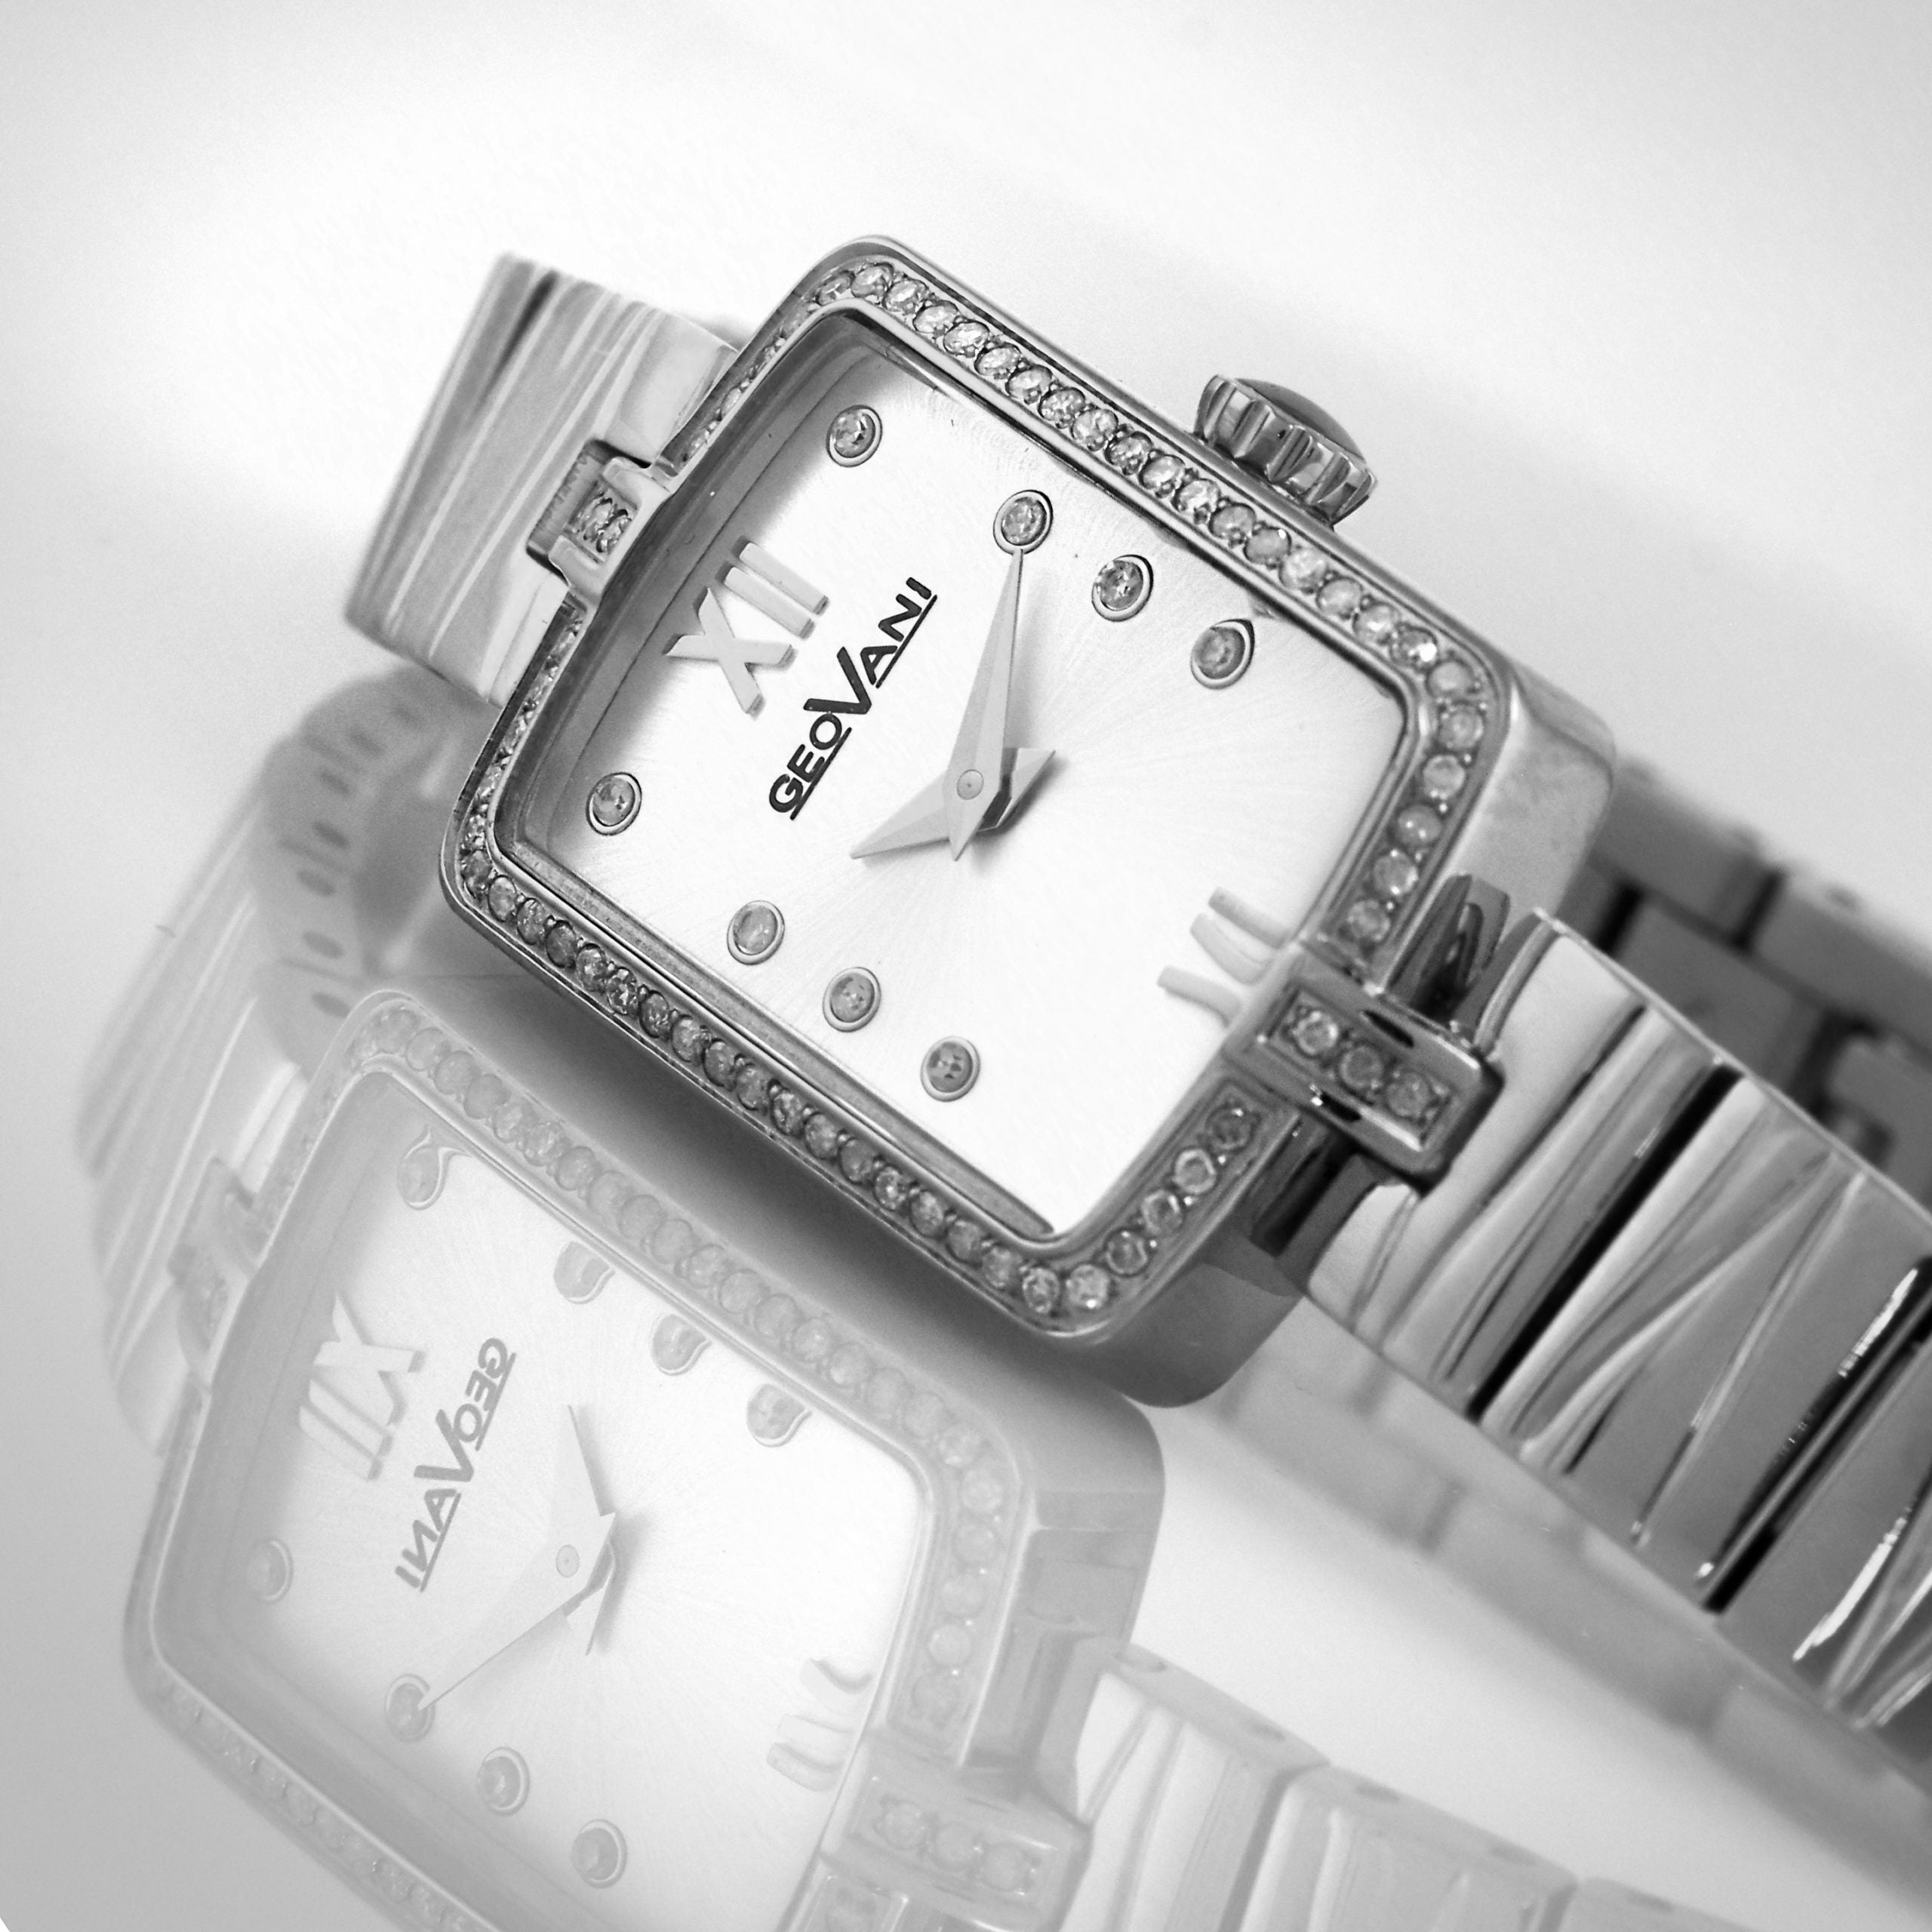 Giovanni Women's Swiss Quartz Watch with White Dial - GEO-0005